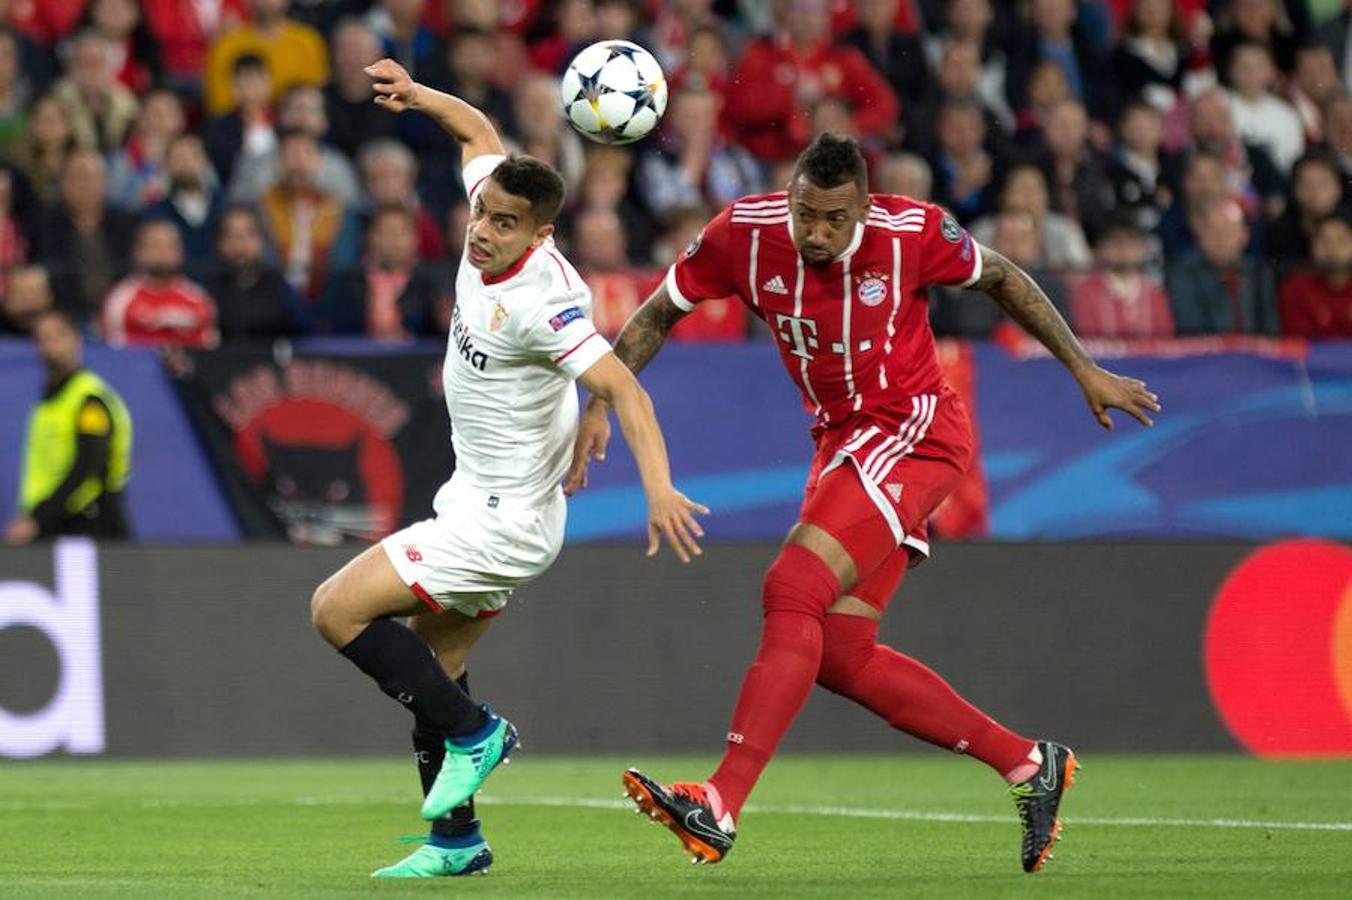 El equipo sevillista compareció decidido a hacer historia en los cuartos de final de la Champions ante un gigante como el Bayern